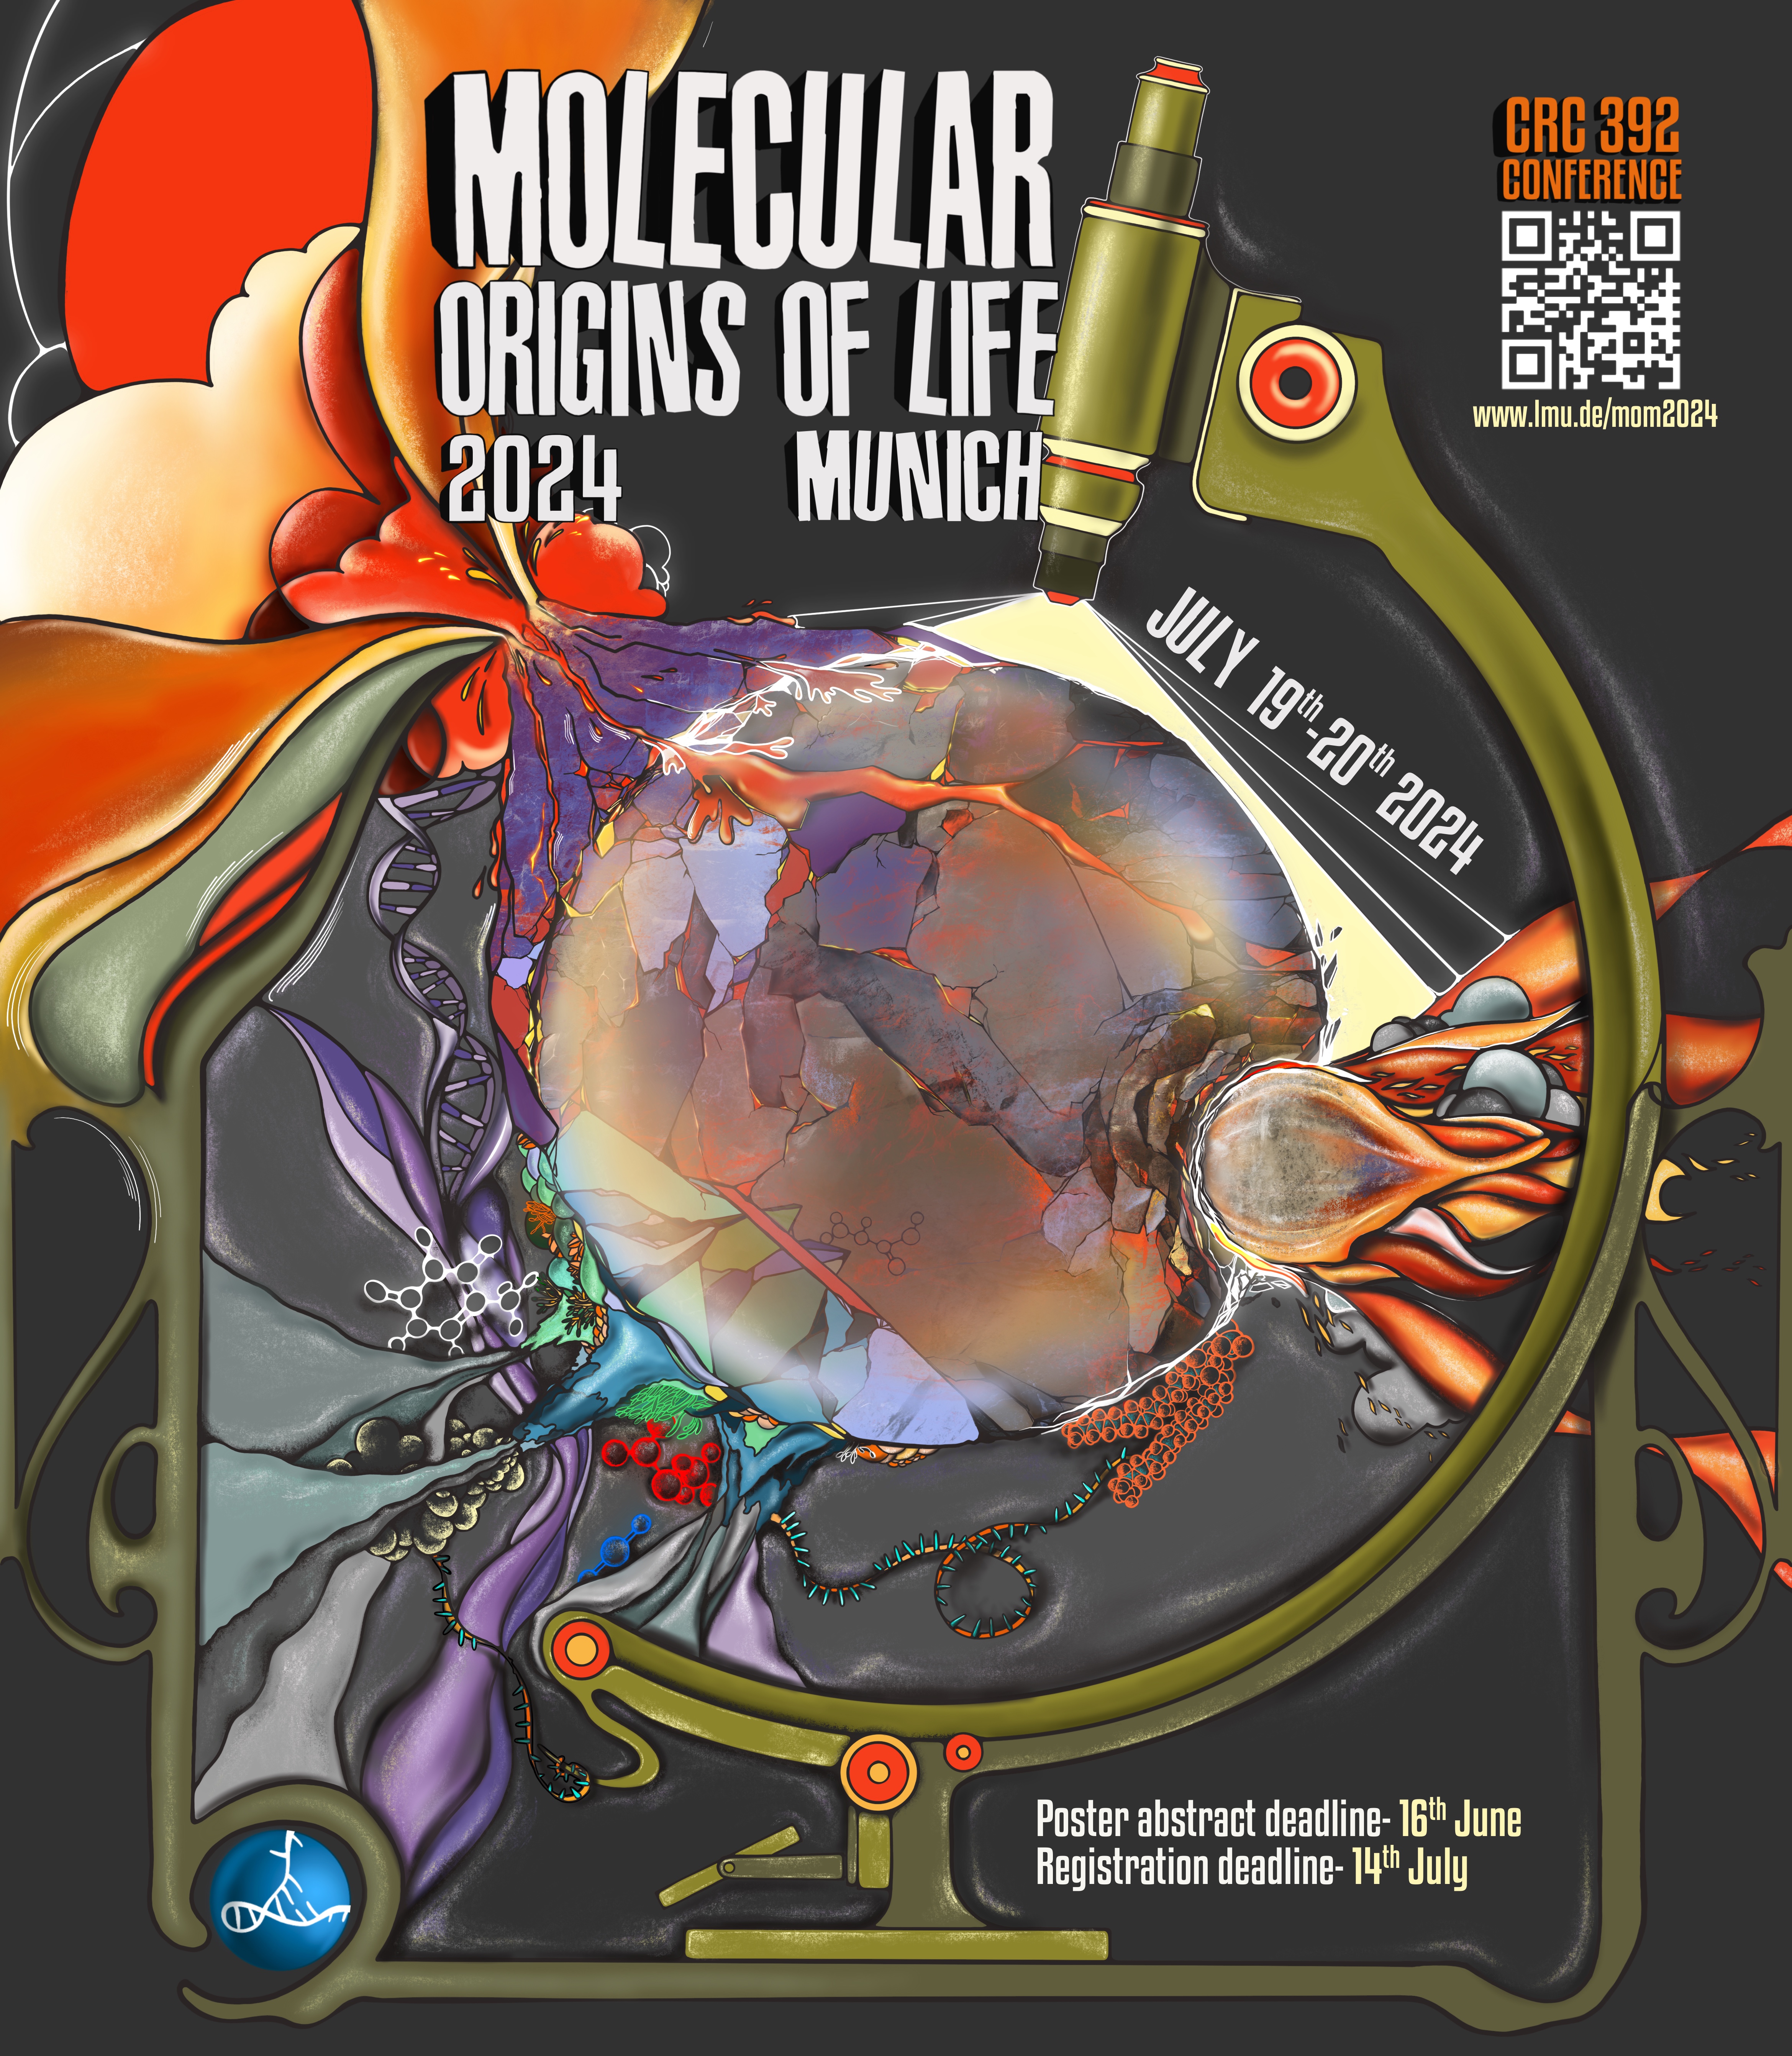 Molecular Origins of Life Munich - July 19th-20th, 2024 